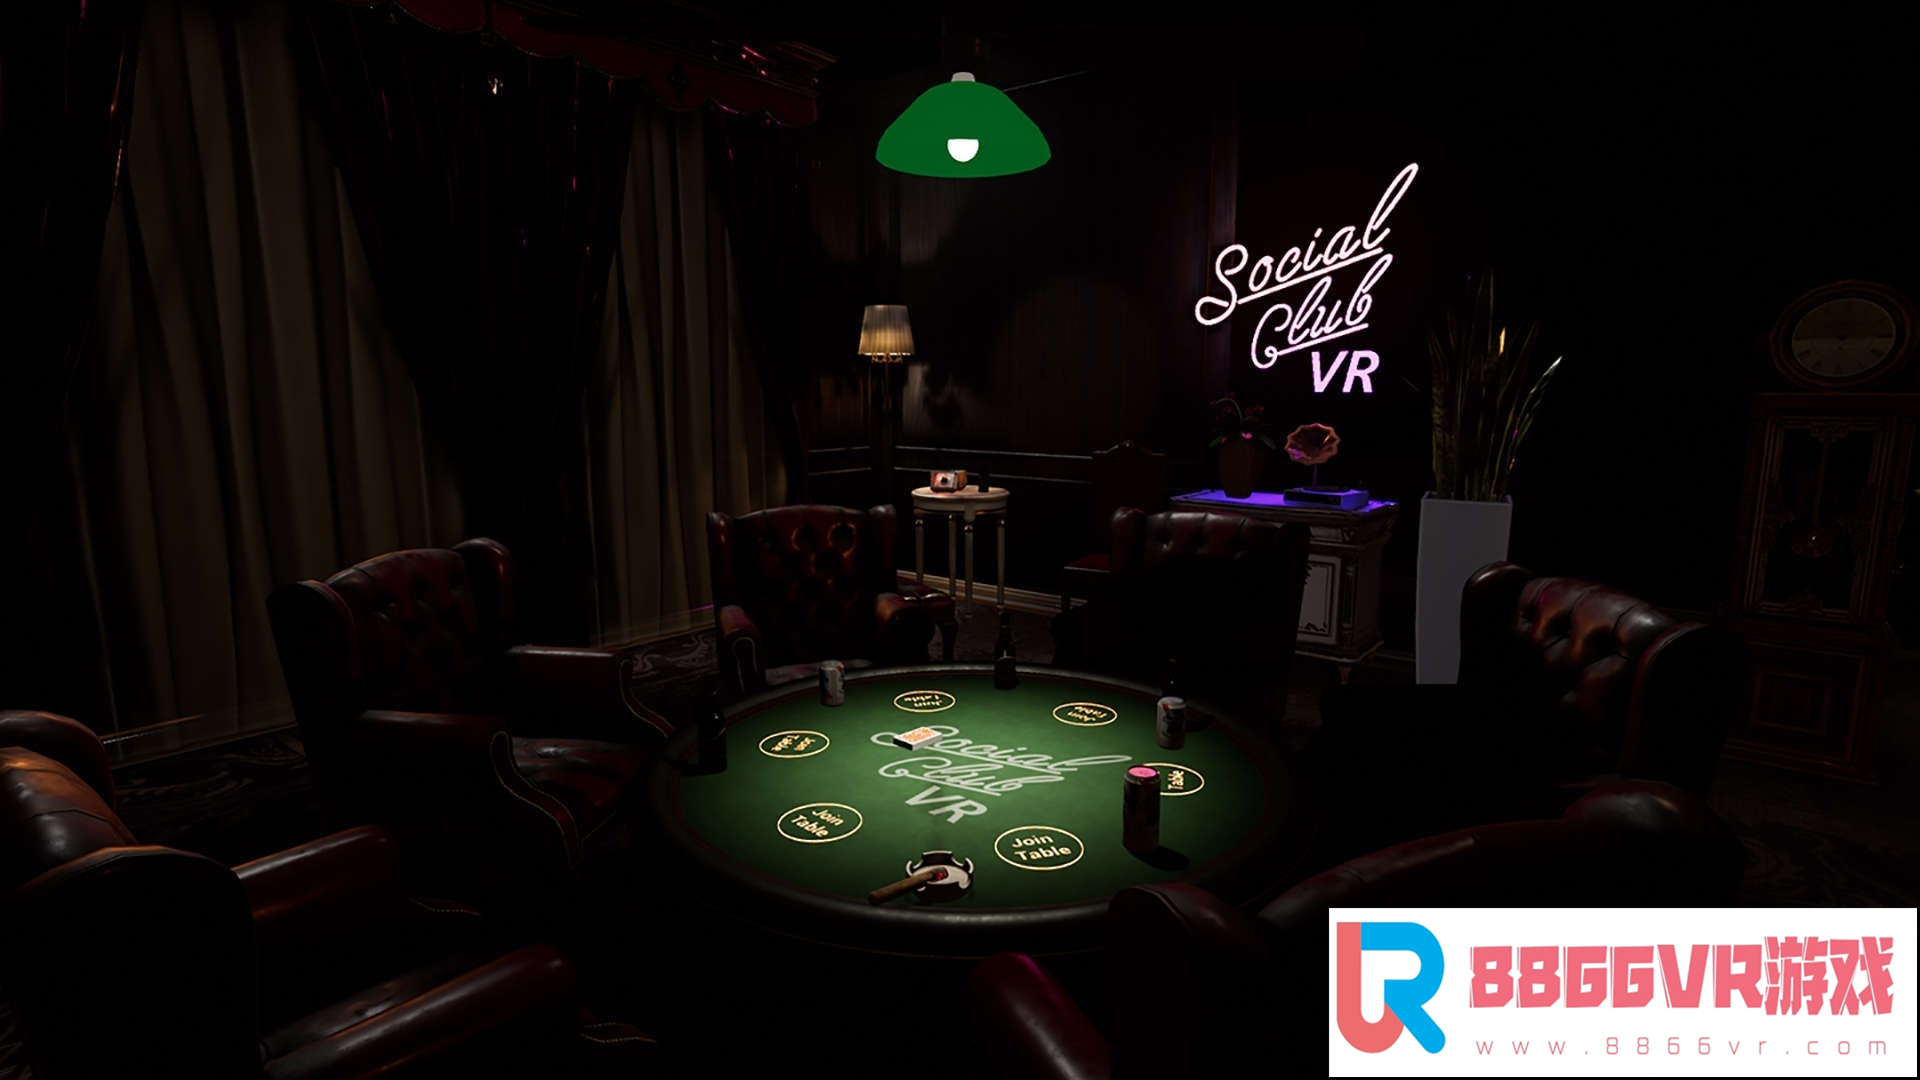 [VR交流学习] 联谊俱乐部 VR (Social Club VR : Casino Nights)842 作者:307836997 帖子ID:170 破解,联谊,俱乐部,social,club